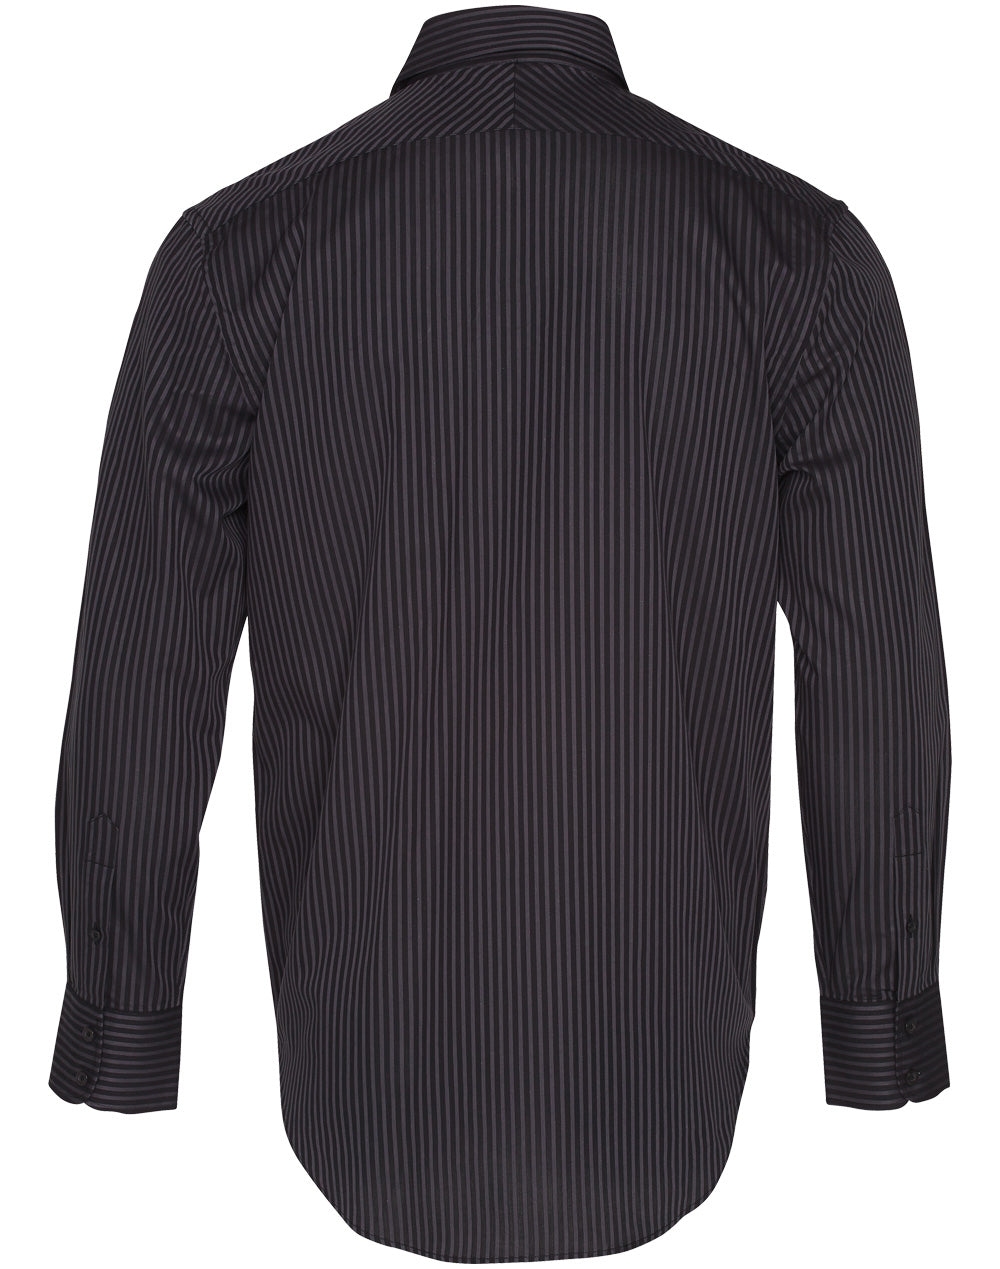 Winning Spirit Men's Dobby Stripe Long Sleeve Shirt (M7132)